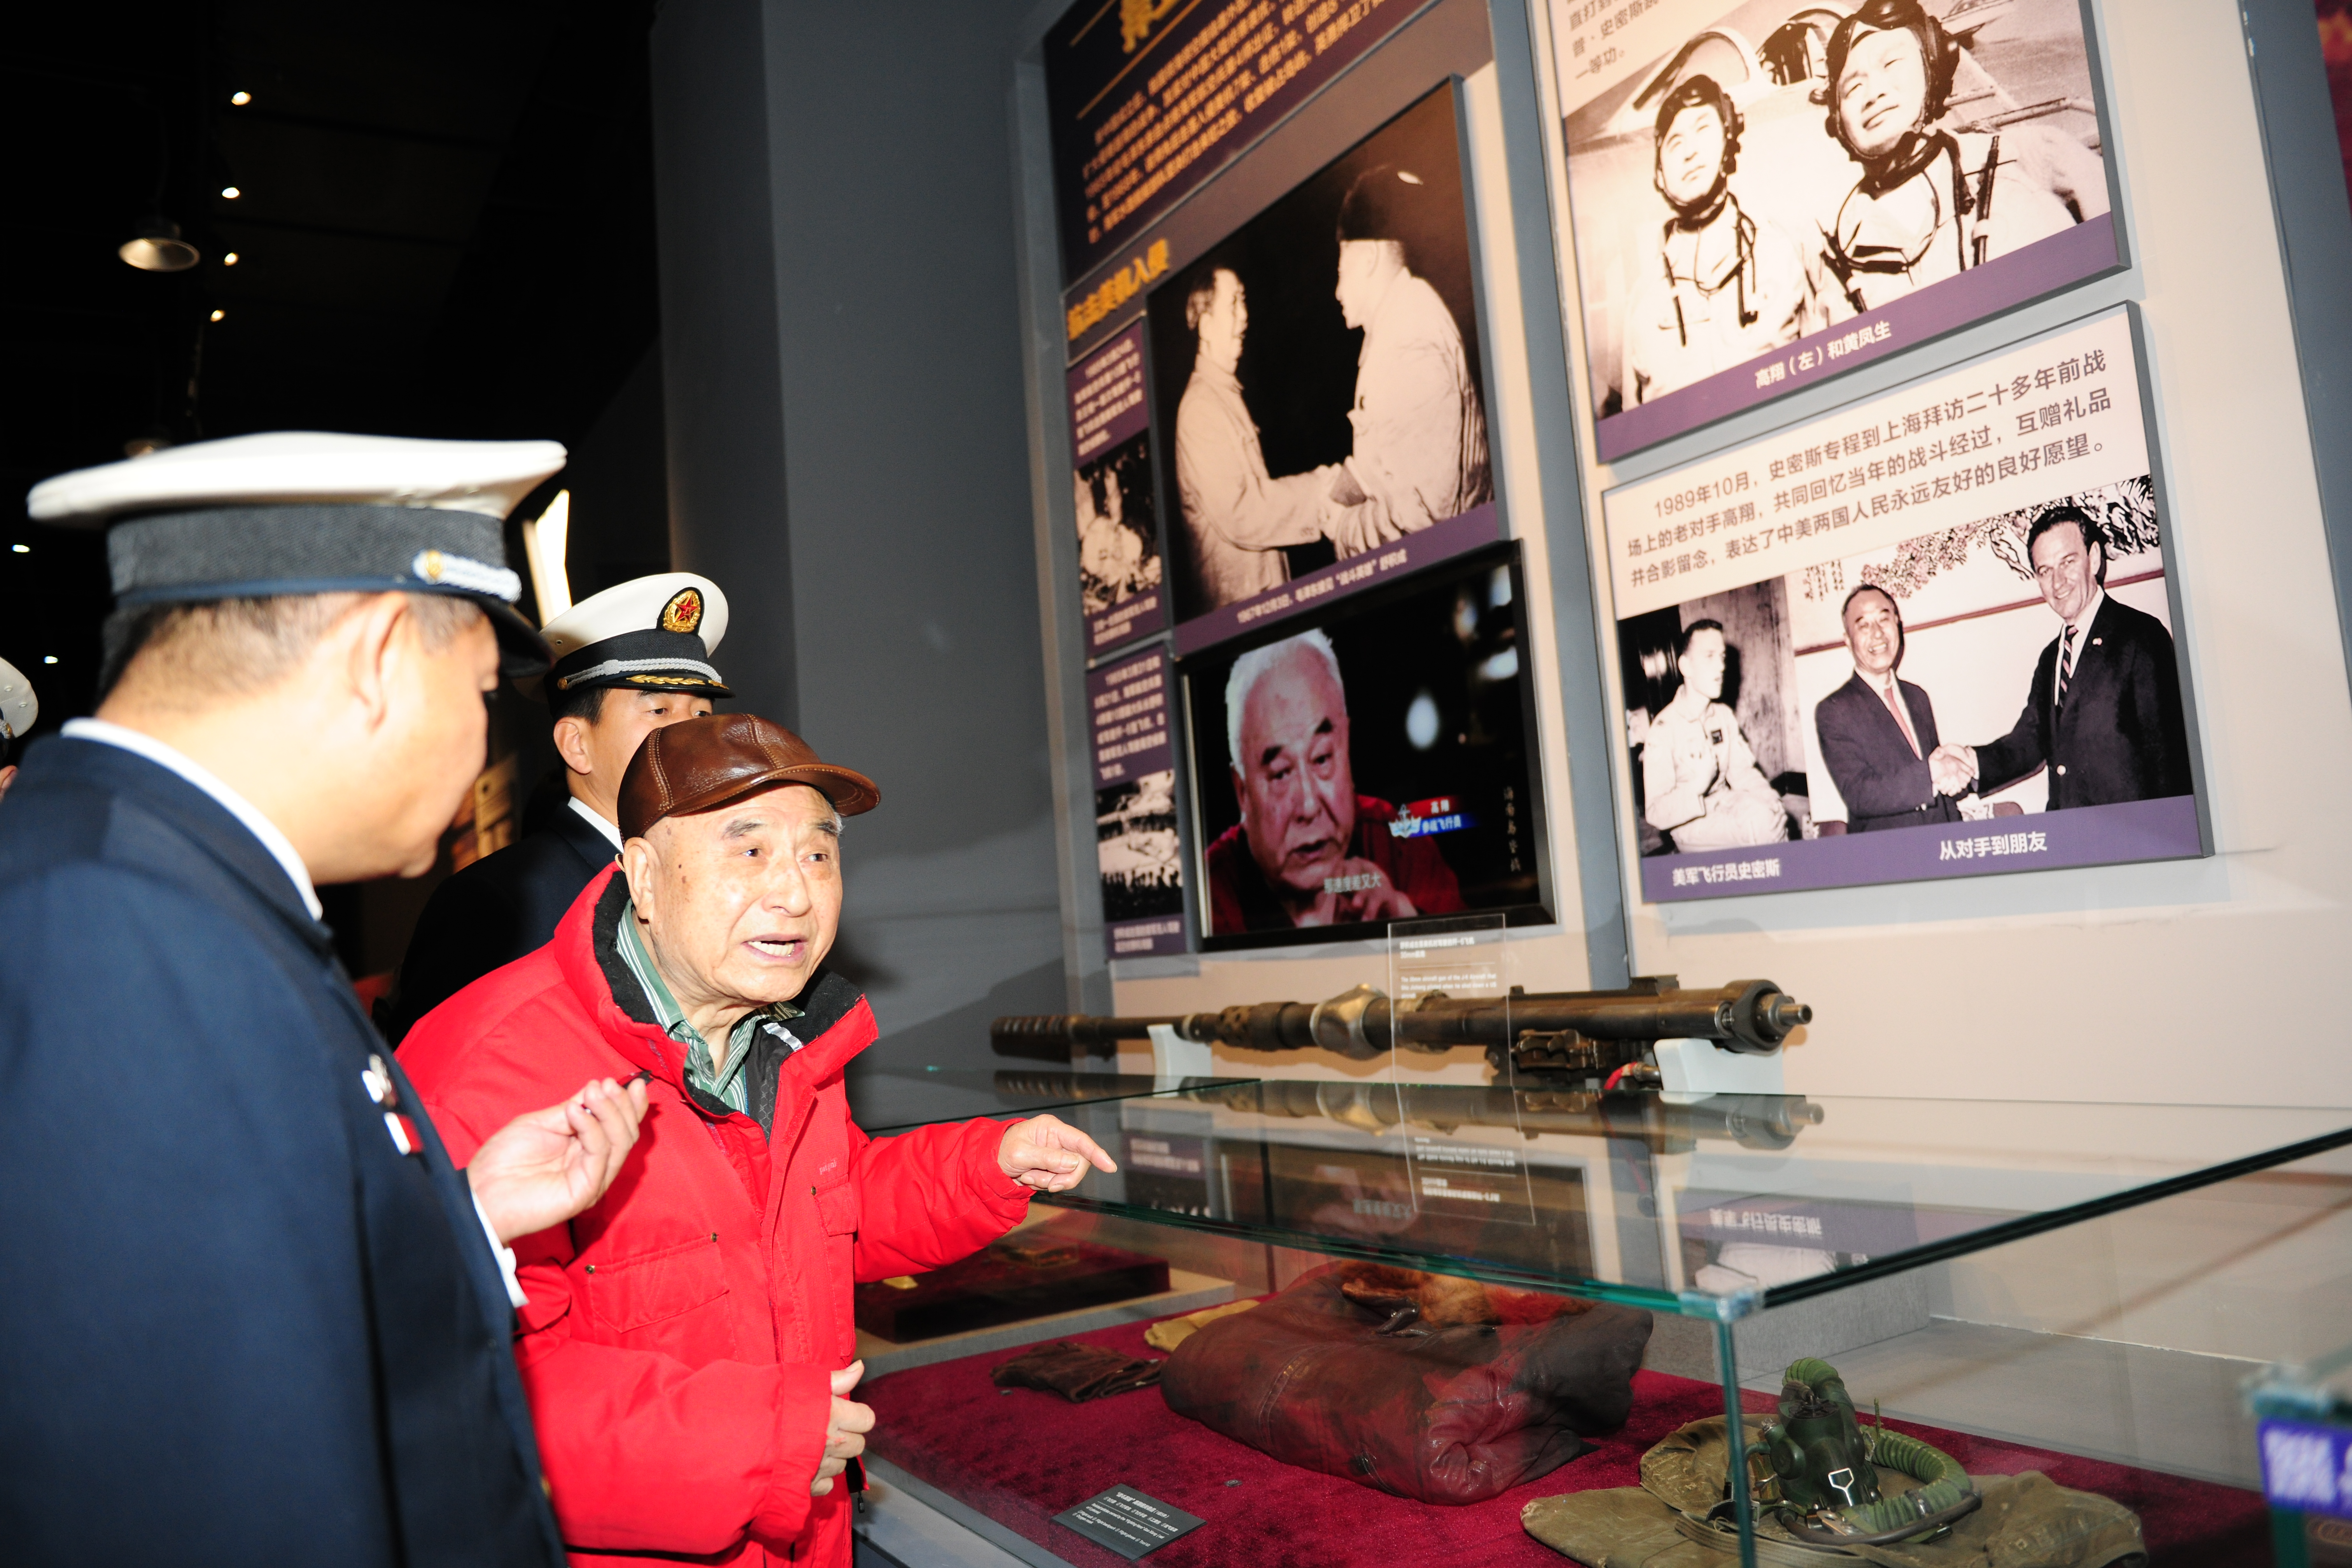 英雄飞行员高翔参观海军博物馆